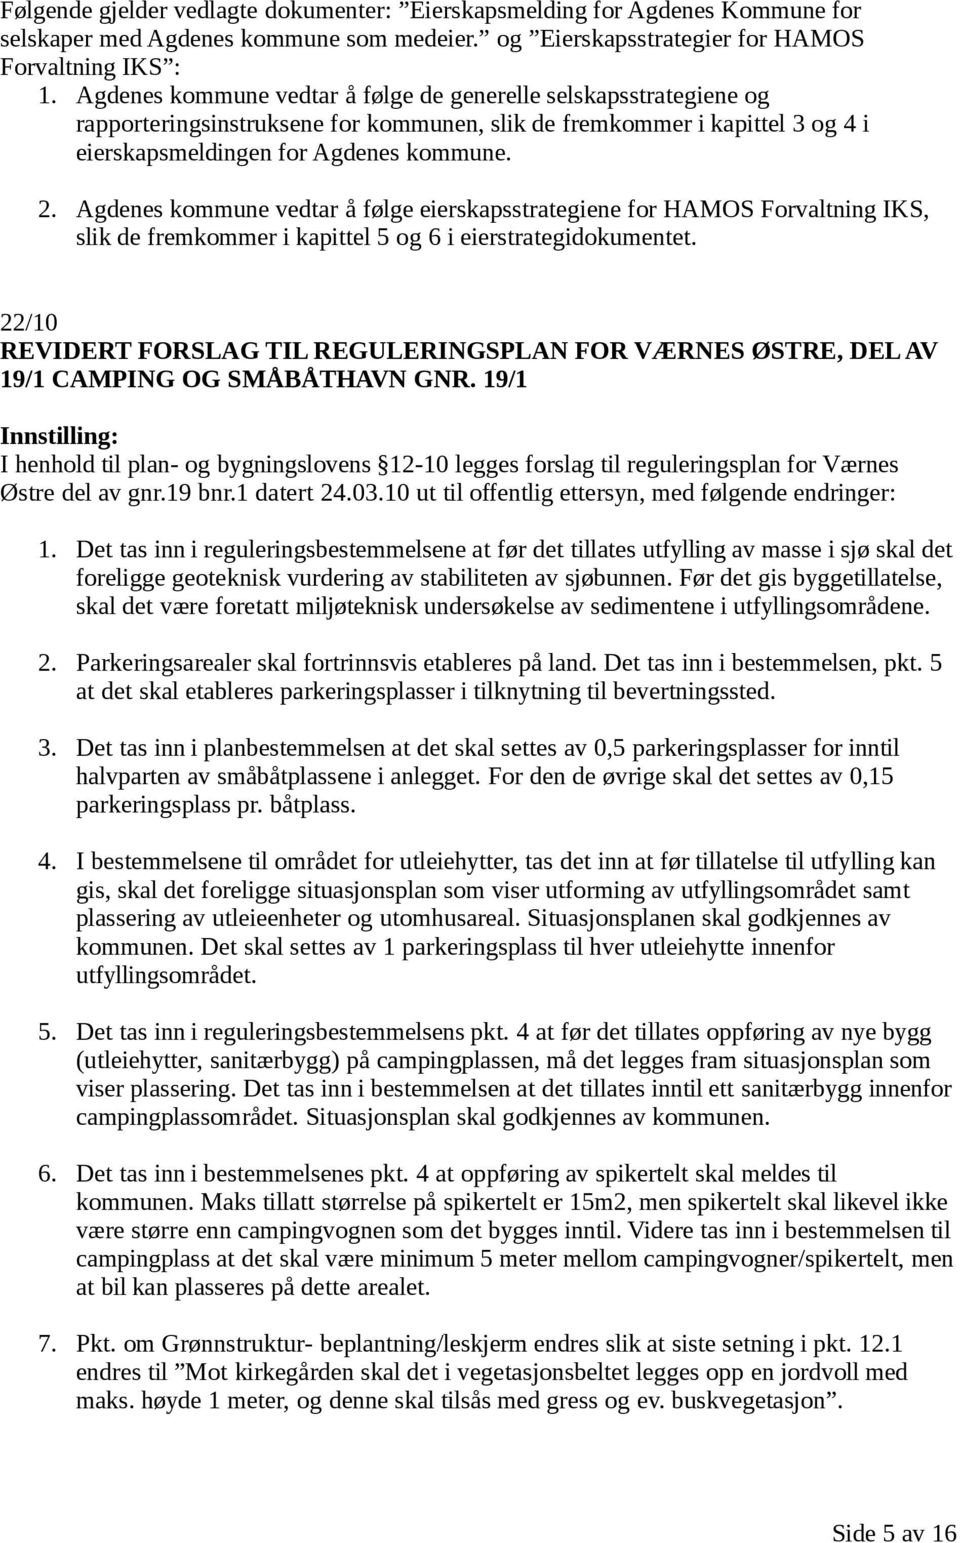 Agdenes kommune vedtar å følge eierskapsstrategiene for HAMOS Forvaltning IKS, slik de fremkommer i kapittel 5 og 6 i eierstrategidokumentet.